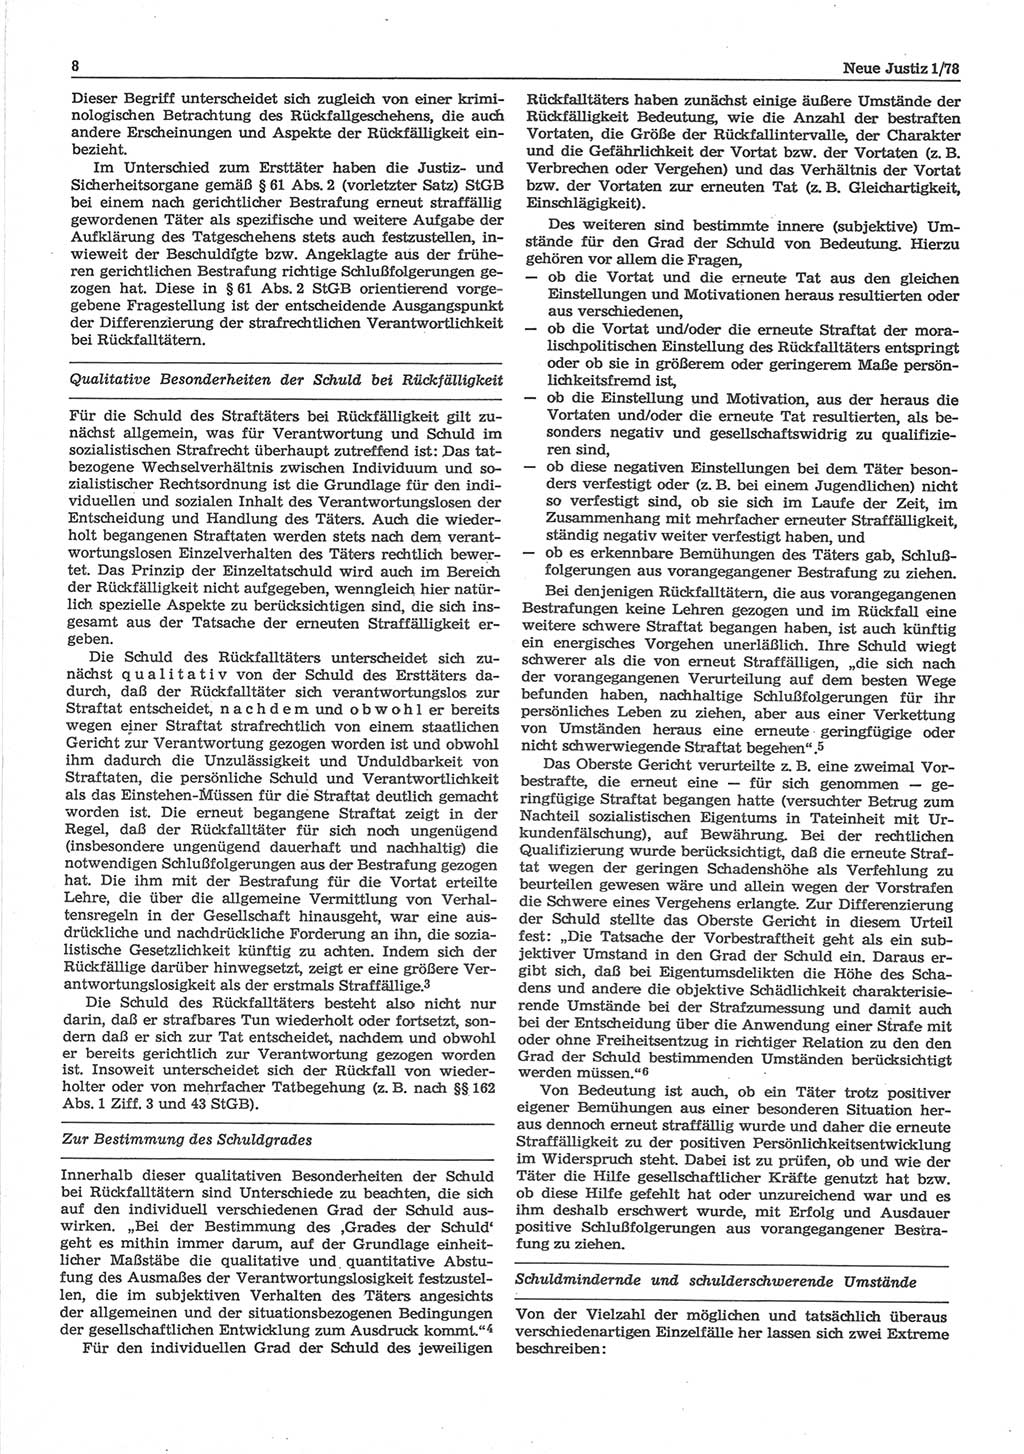 Neue Justiz (NJ), Zeitschrift für sozialistisches Recht und Gesetzlichkeit [Deutsche Demokratische Republik (DDR)], 32. Jahrgang 1978, Seite 8 (NJ DDR 1978, S. 8)